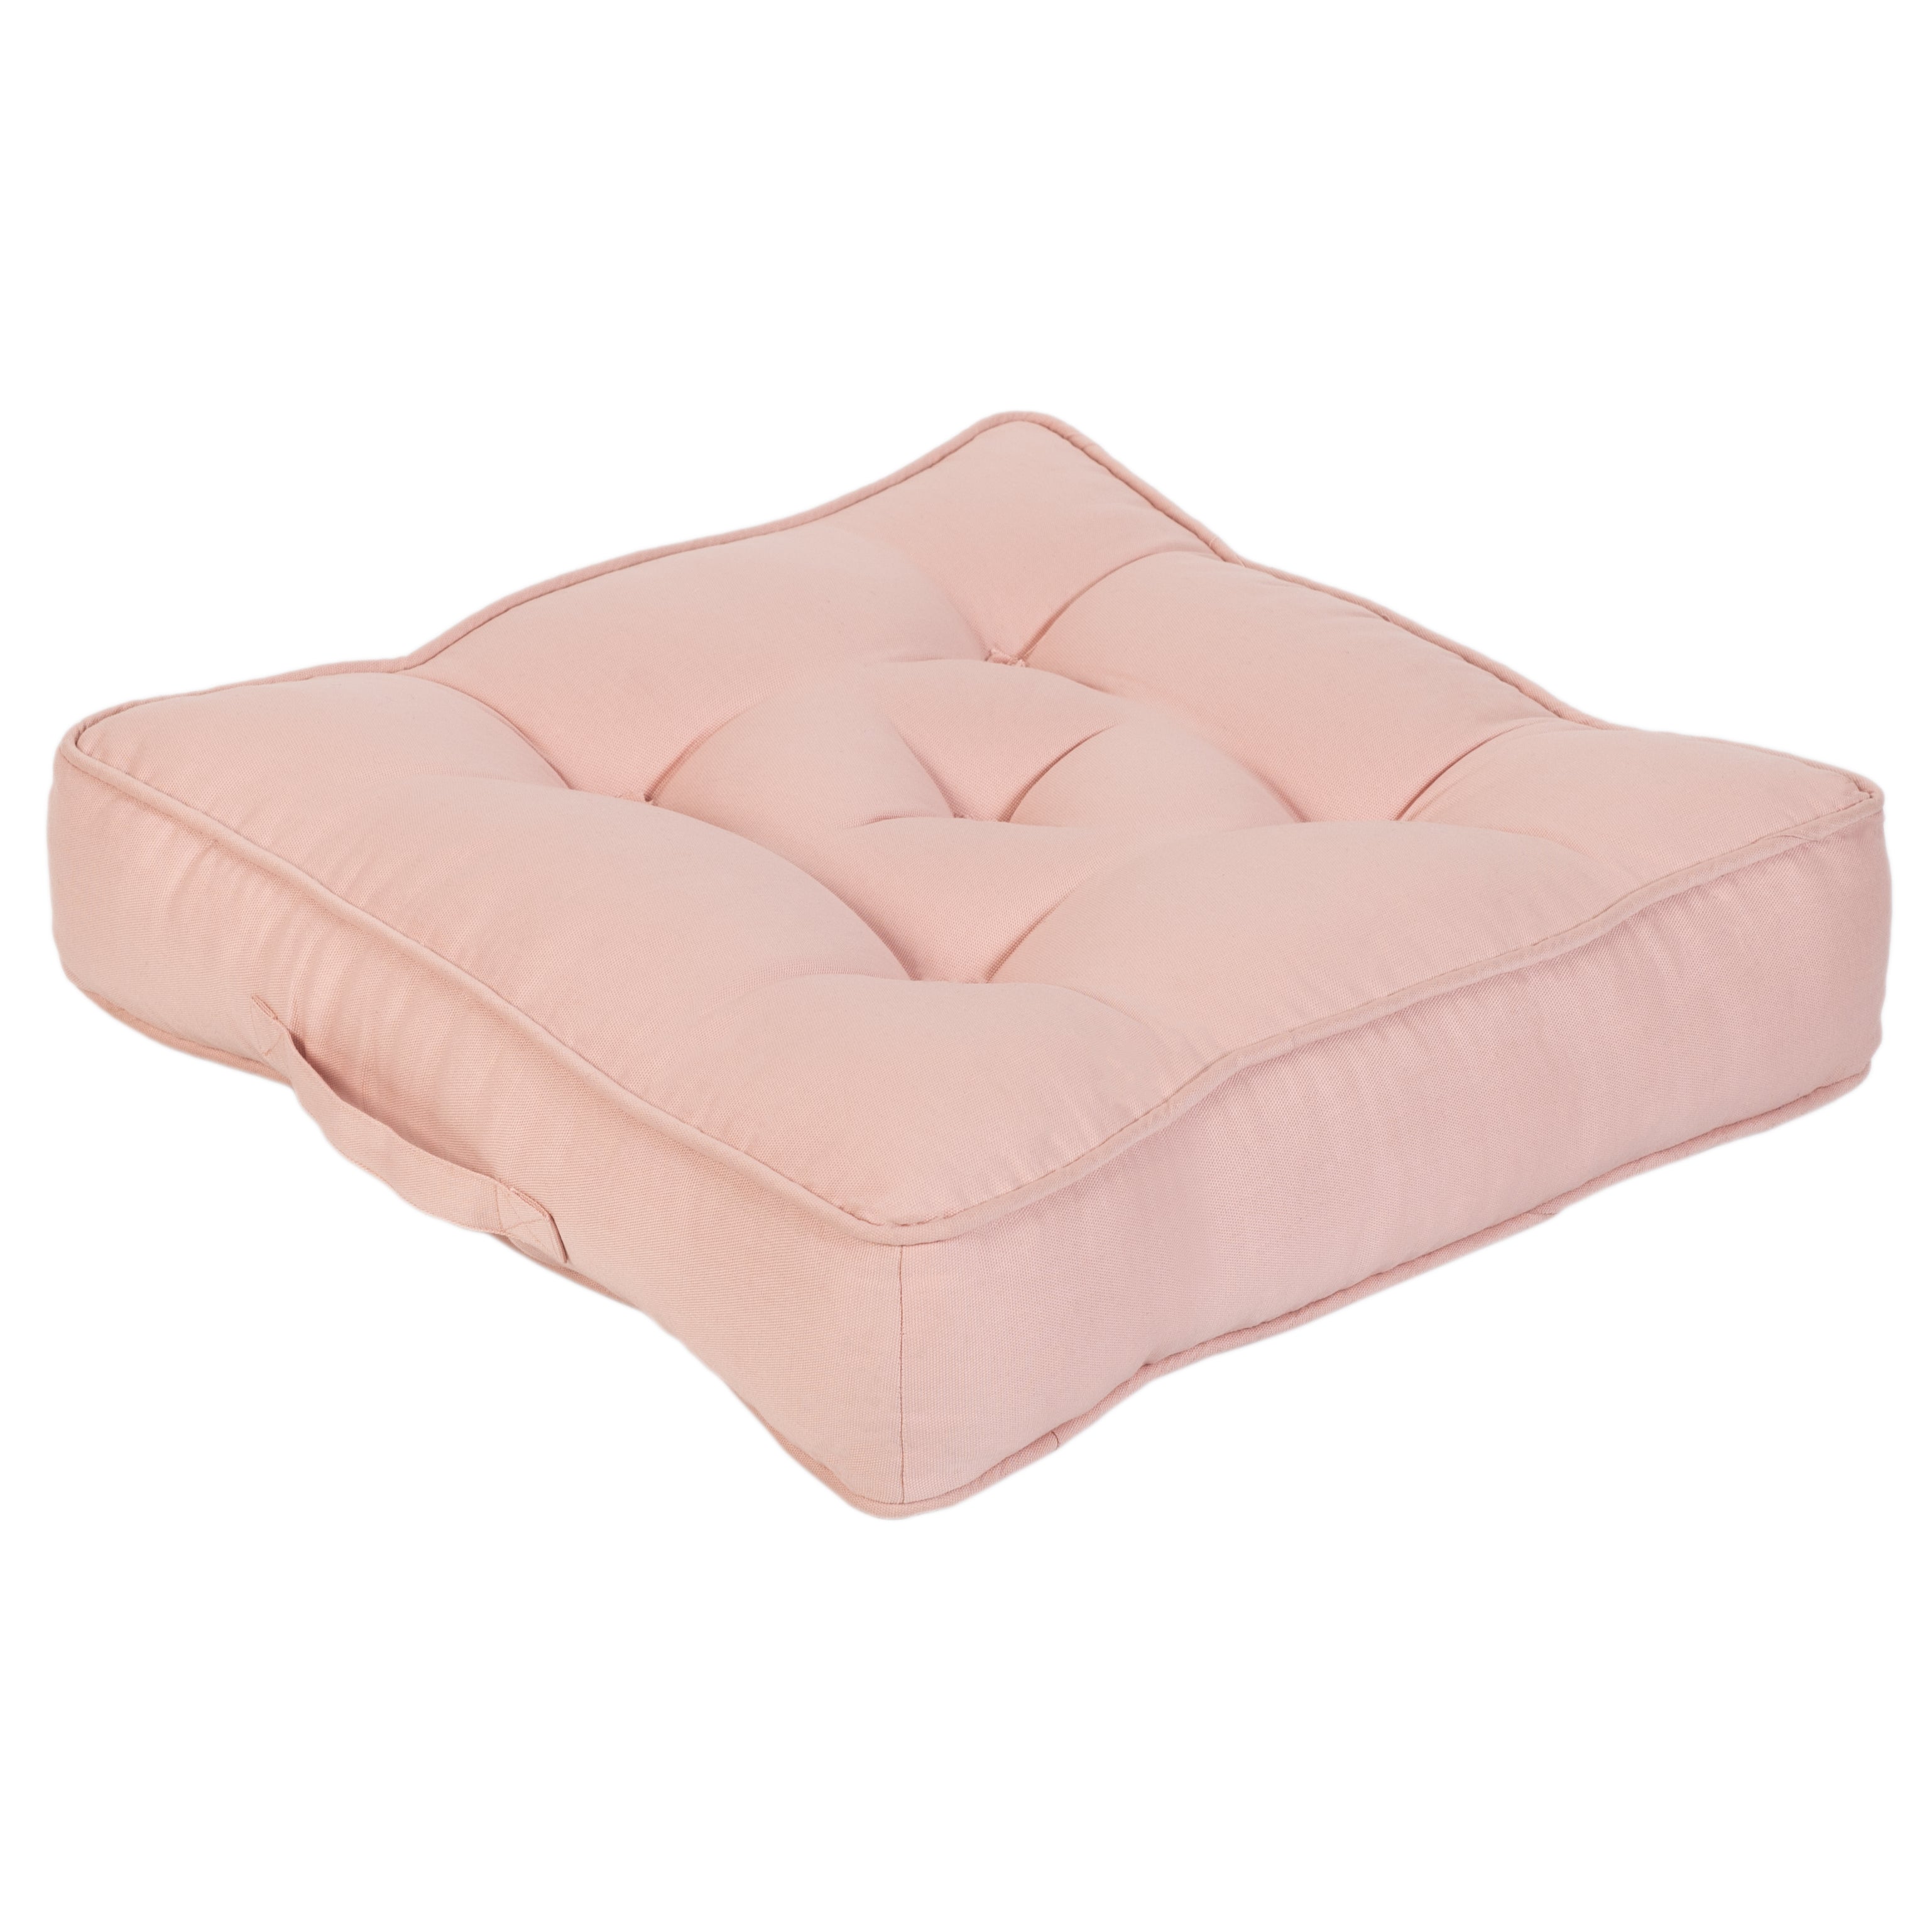 Loft 25 Armchair Cotton Booster Cushion